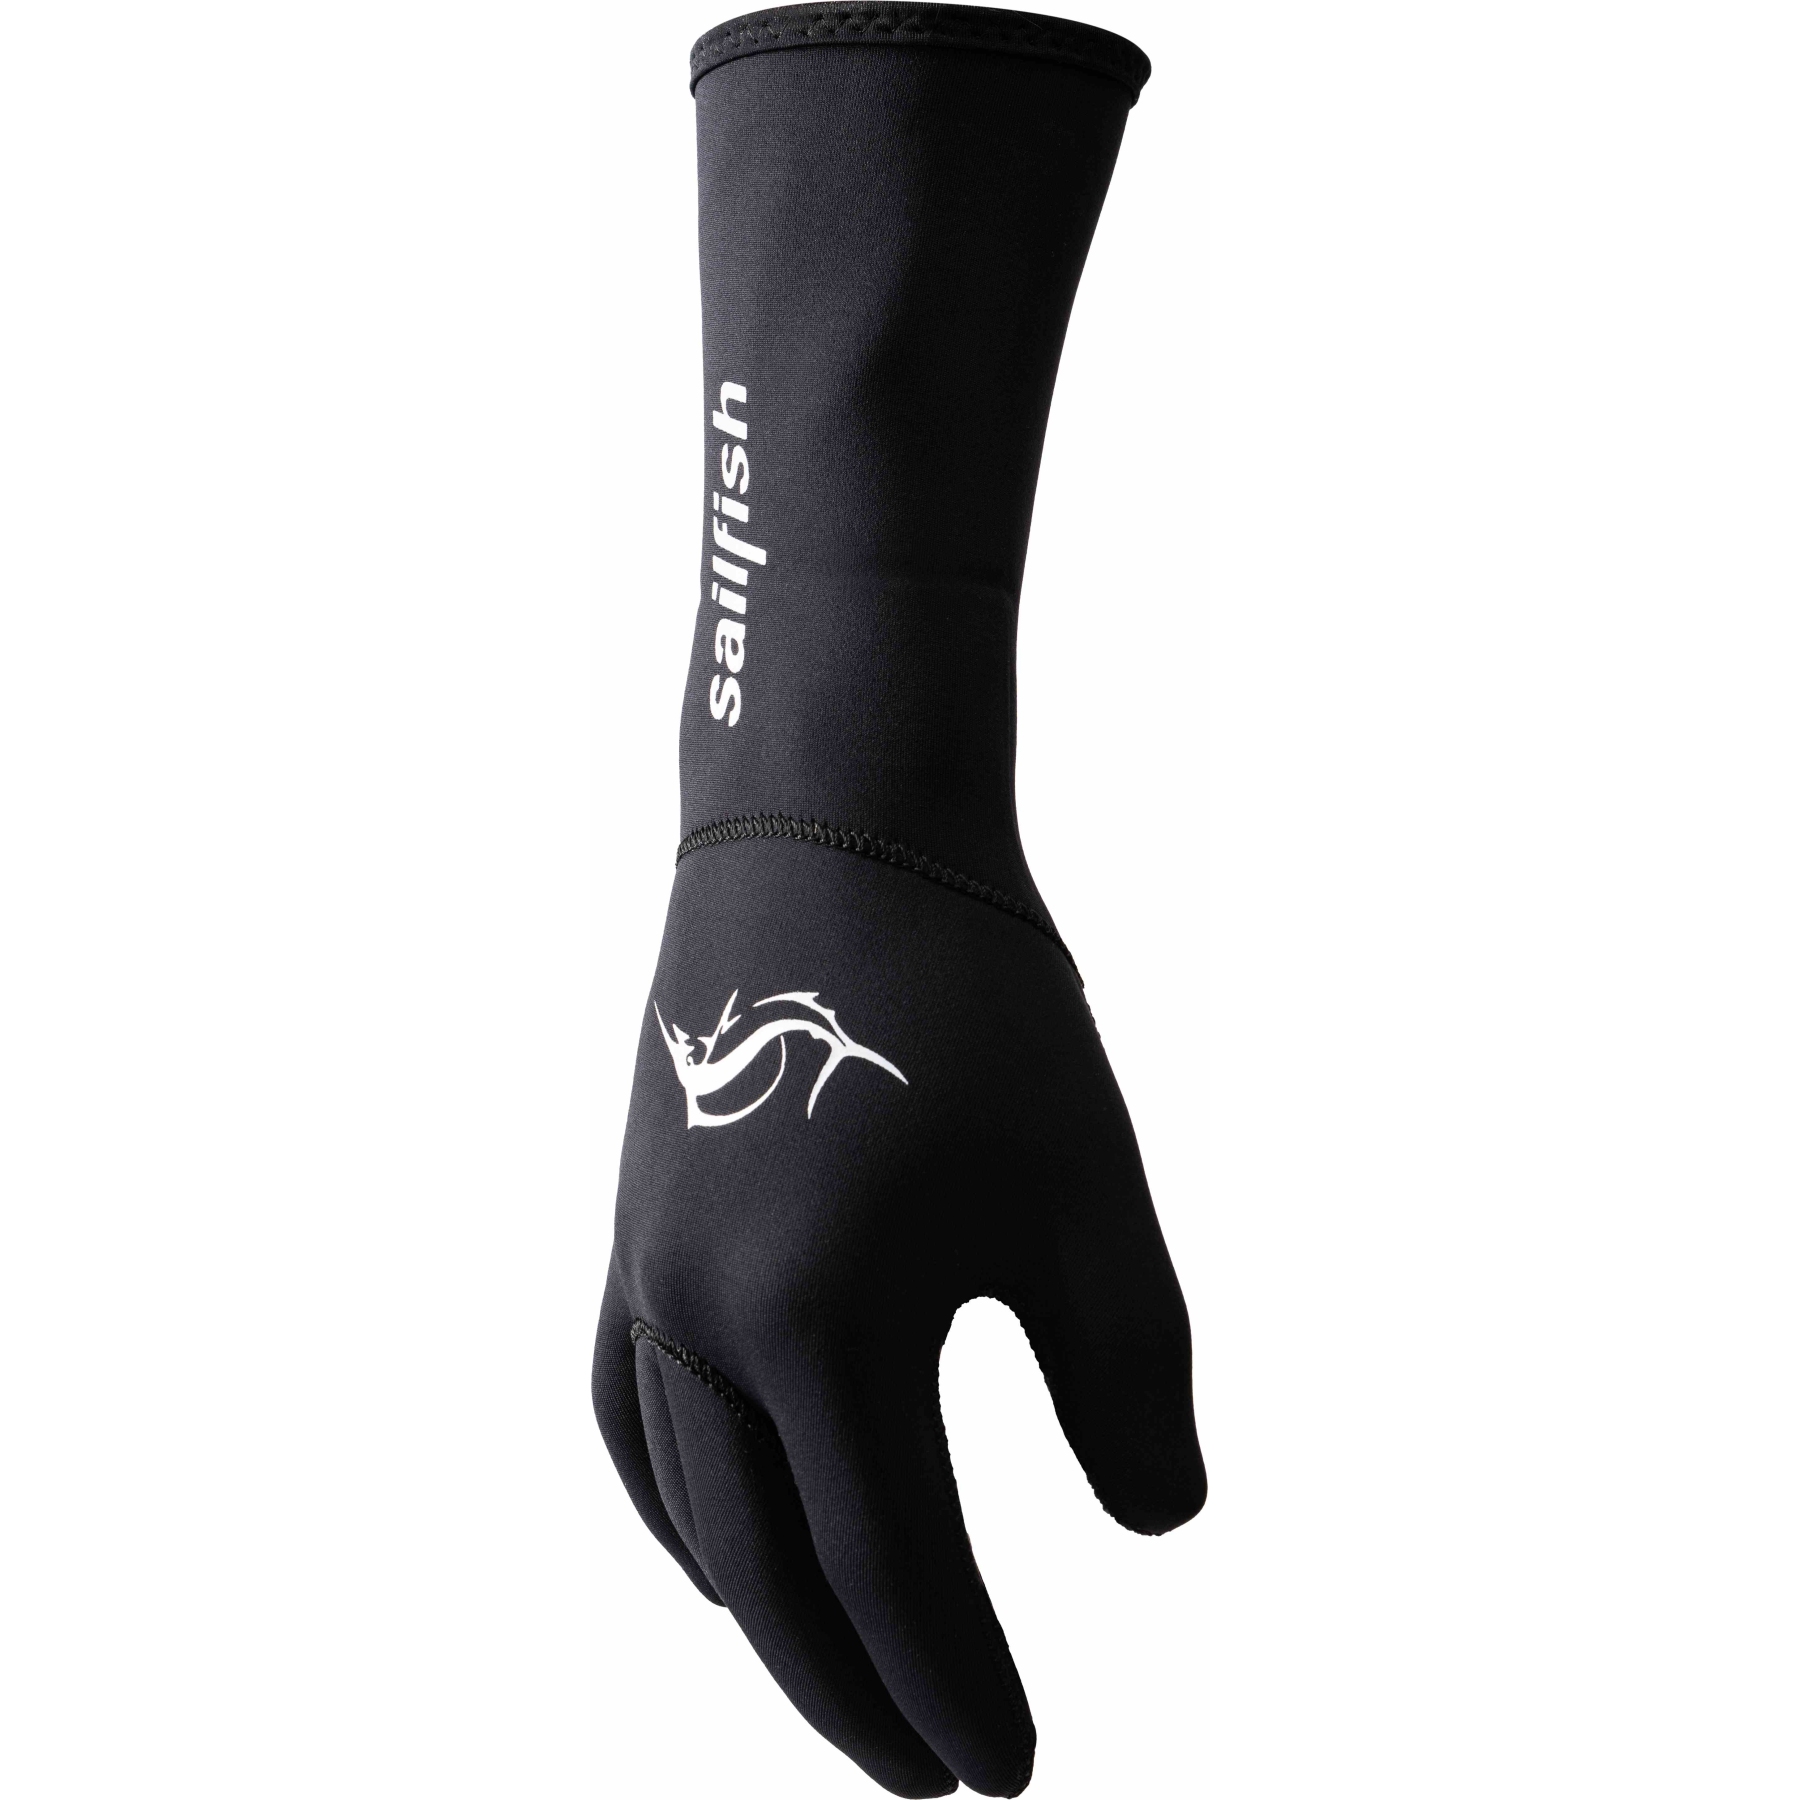 Produktbild von sailfish Neopren Handschuhe - schwarz